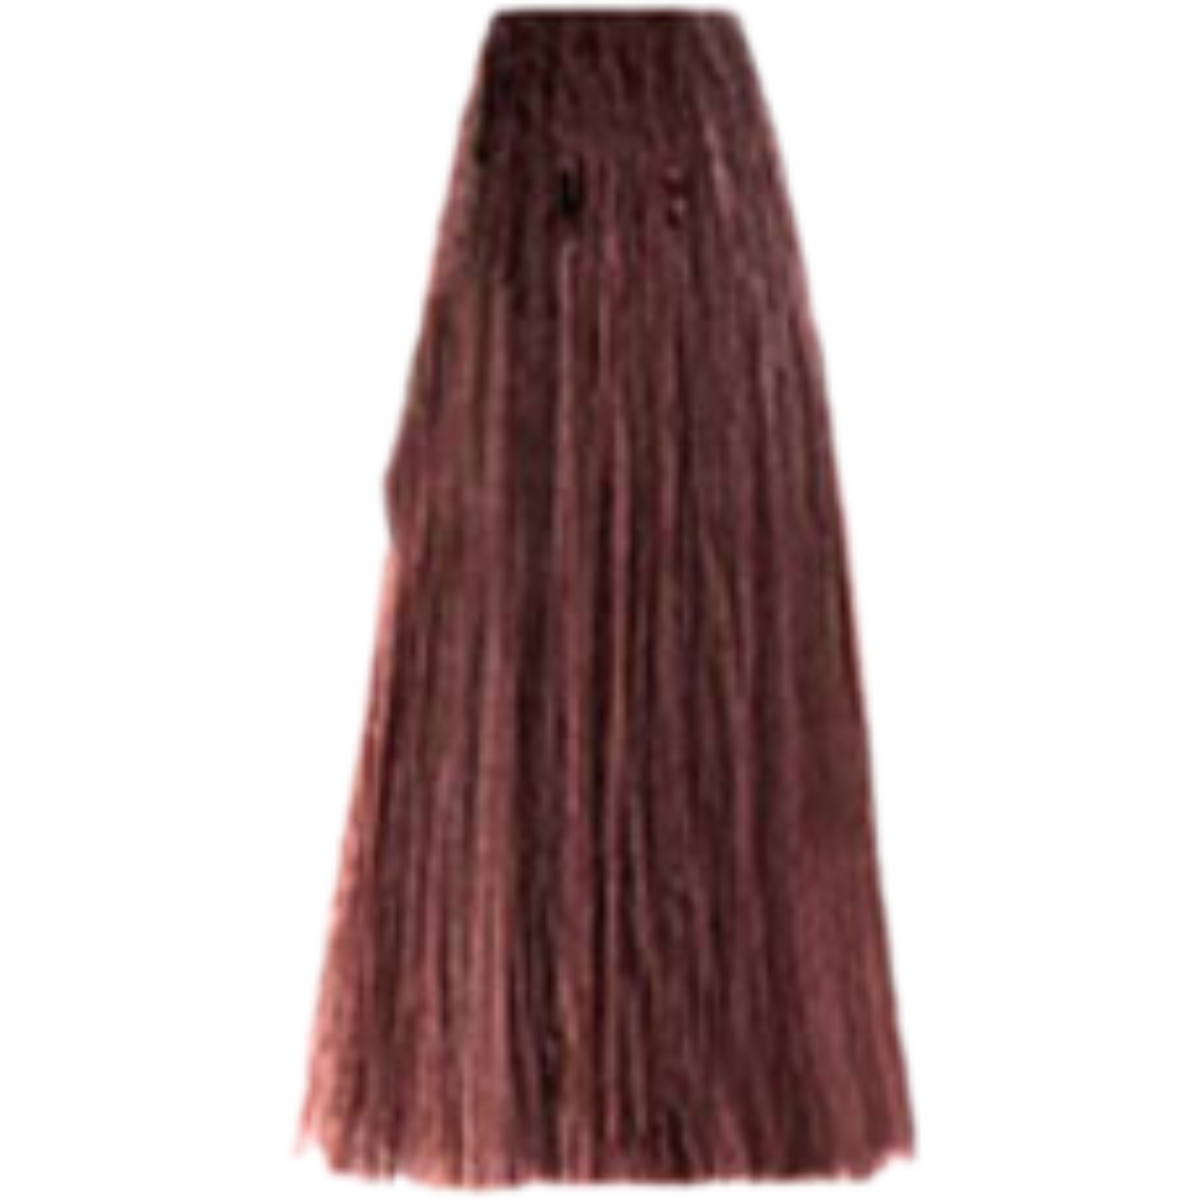 צבע שיער 6.5 DARK MAHOGANY BLONDE פארמויטה FarmaVita צבע לשיער 100 גרם